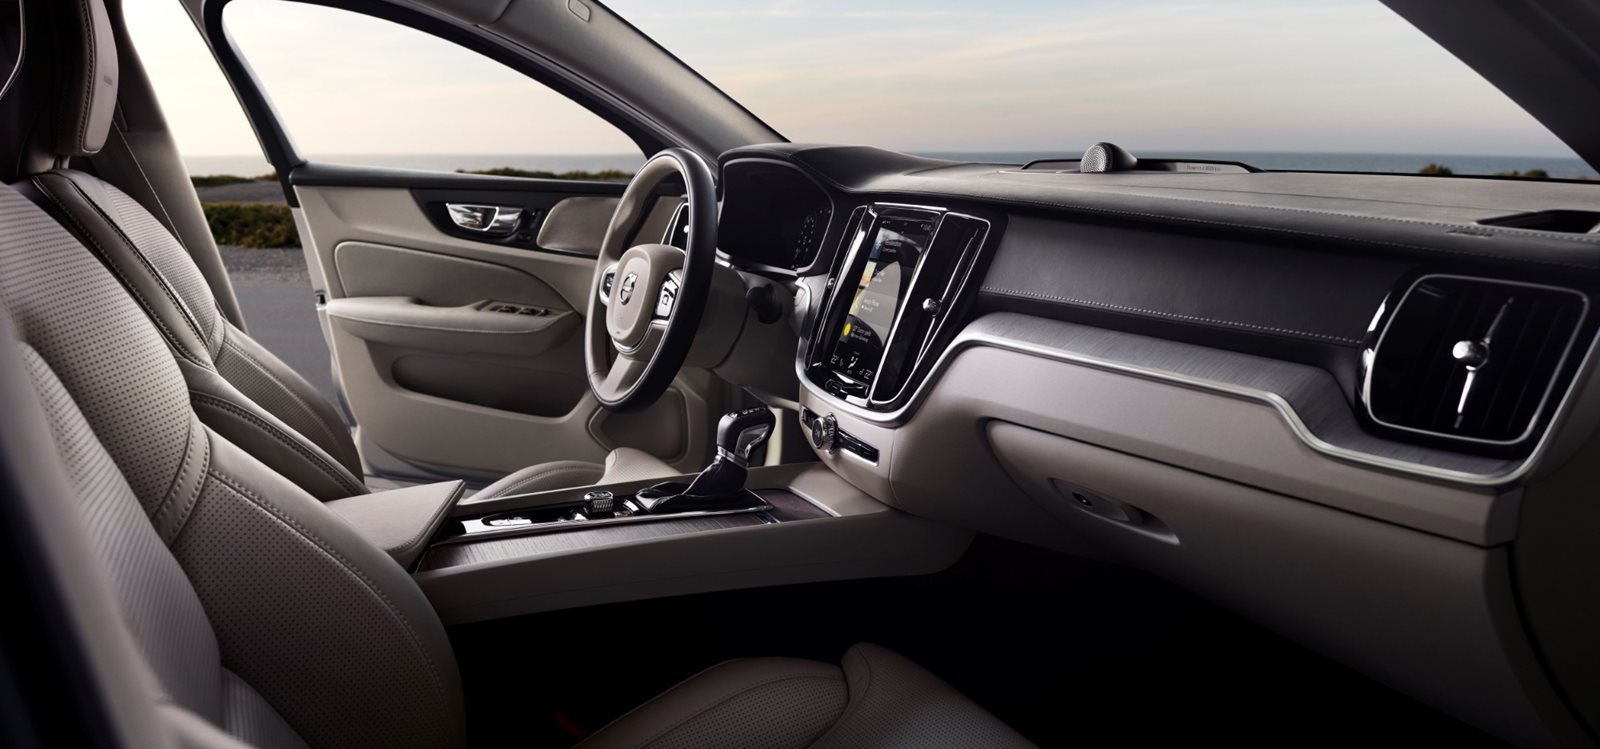 2021 Volvo S60 Interior Photos | CarBuzz